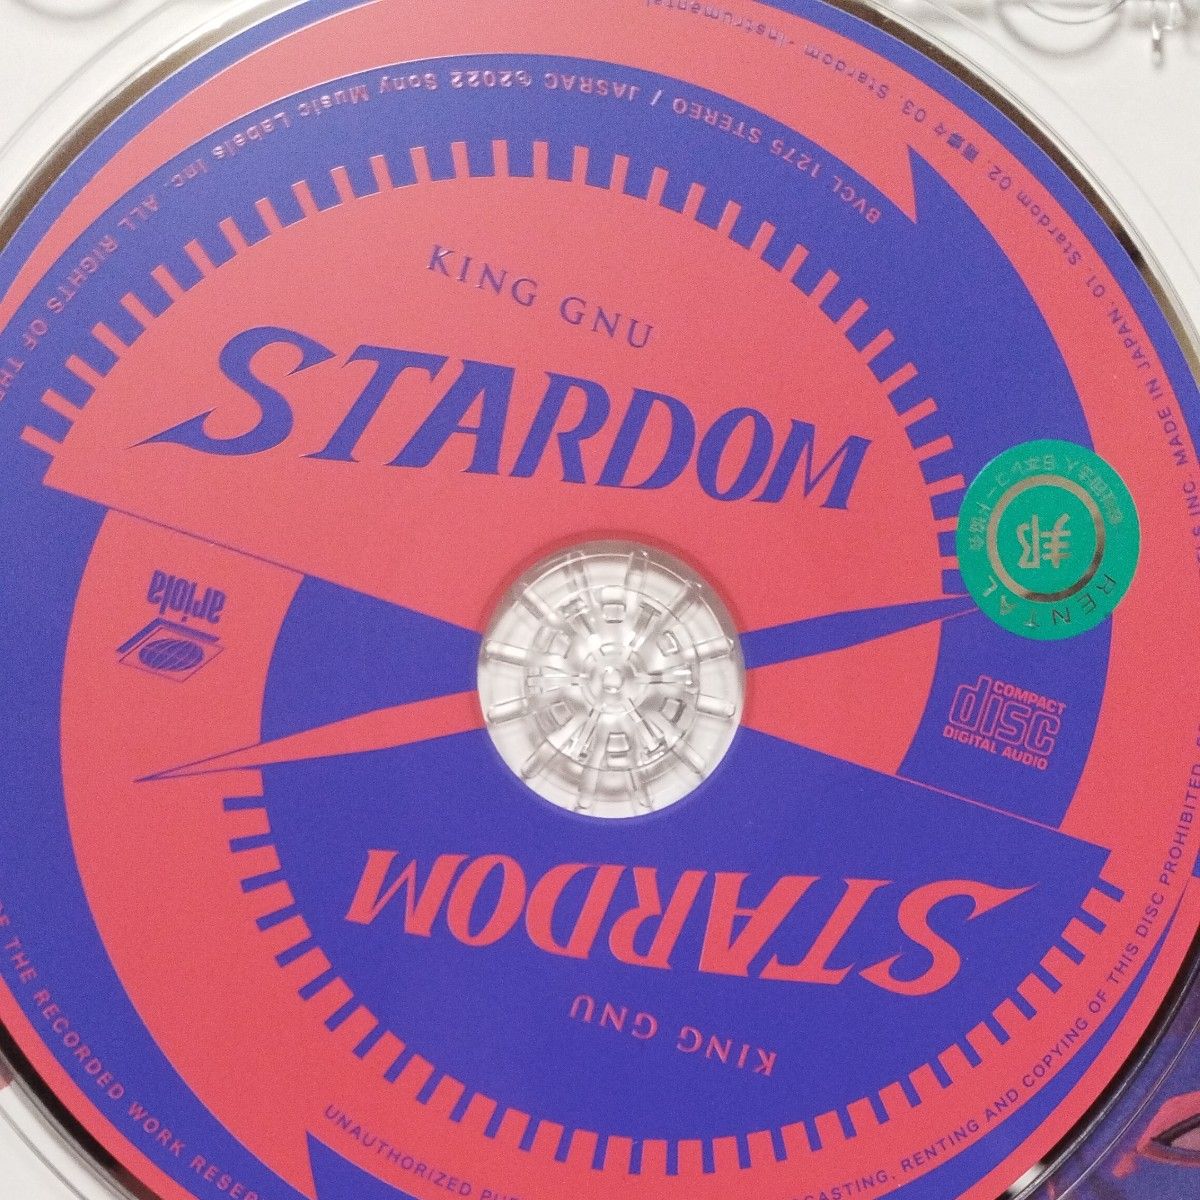 通常盤 King Gnu CD/Stardom 22/11/30発売 【オリコン加盟店】レンタル落ちCD